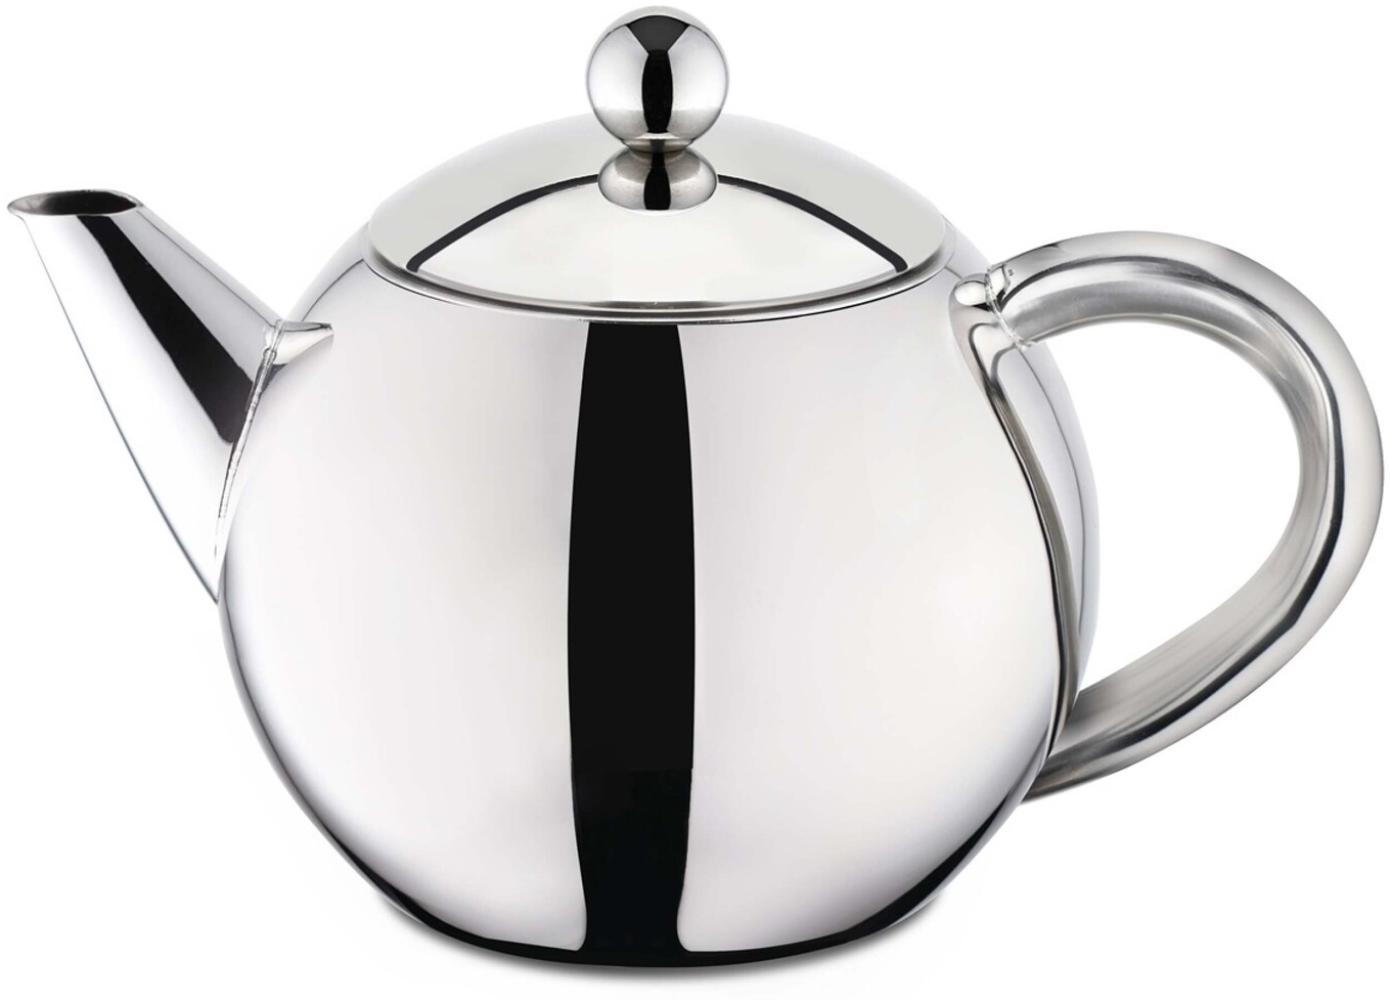 Edelstahl Teekanne 1 Liter mit Teefilter 17011 Bild 1